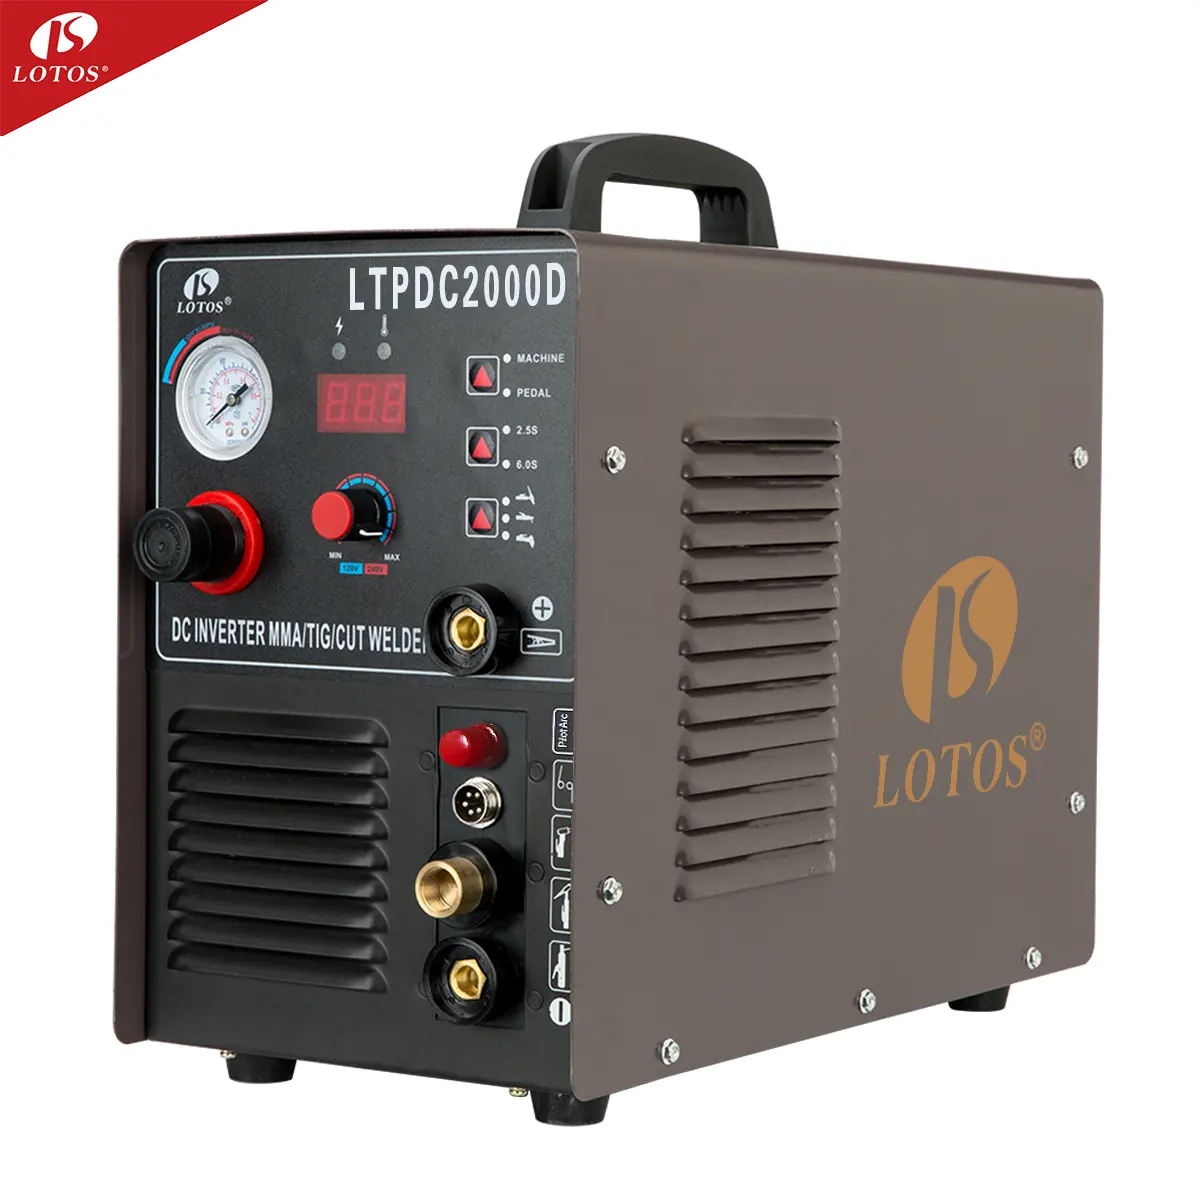 Lotos LTPDC2000D वेल्डर इन्वर्टर 200a कट एमएमए छूत 3 in1 पलटनेवाला वेल्डिंग मशीन की कीमत के लिए बिक्री